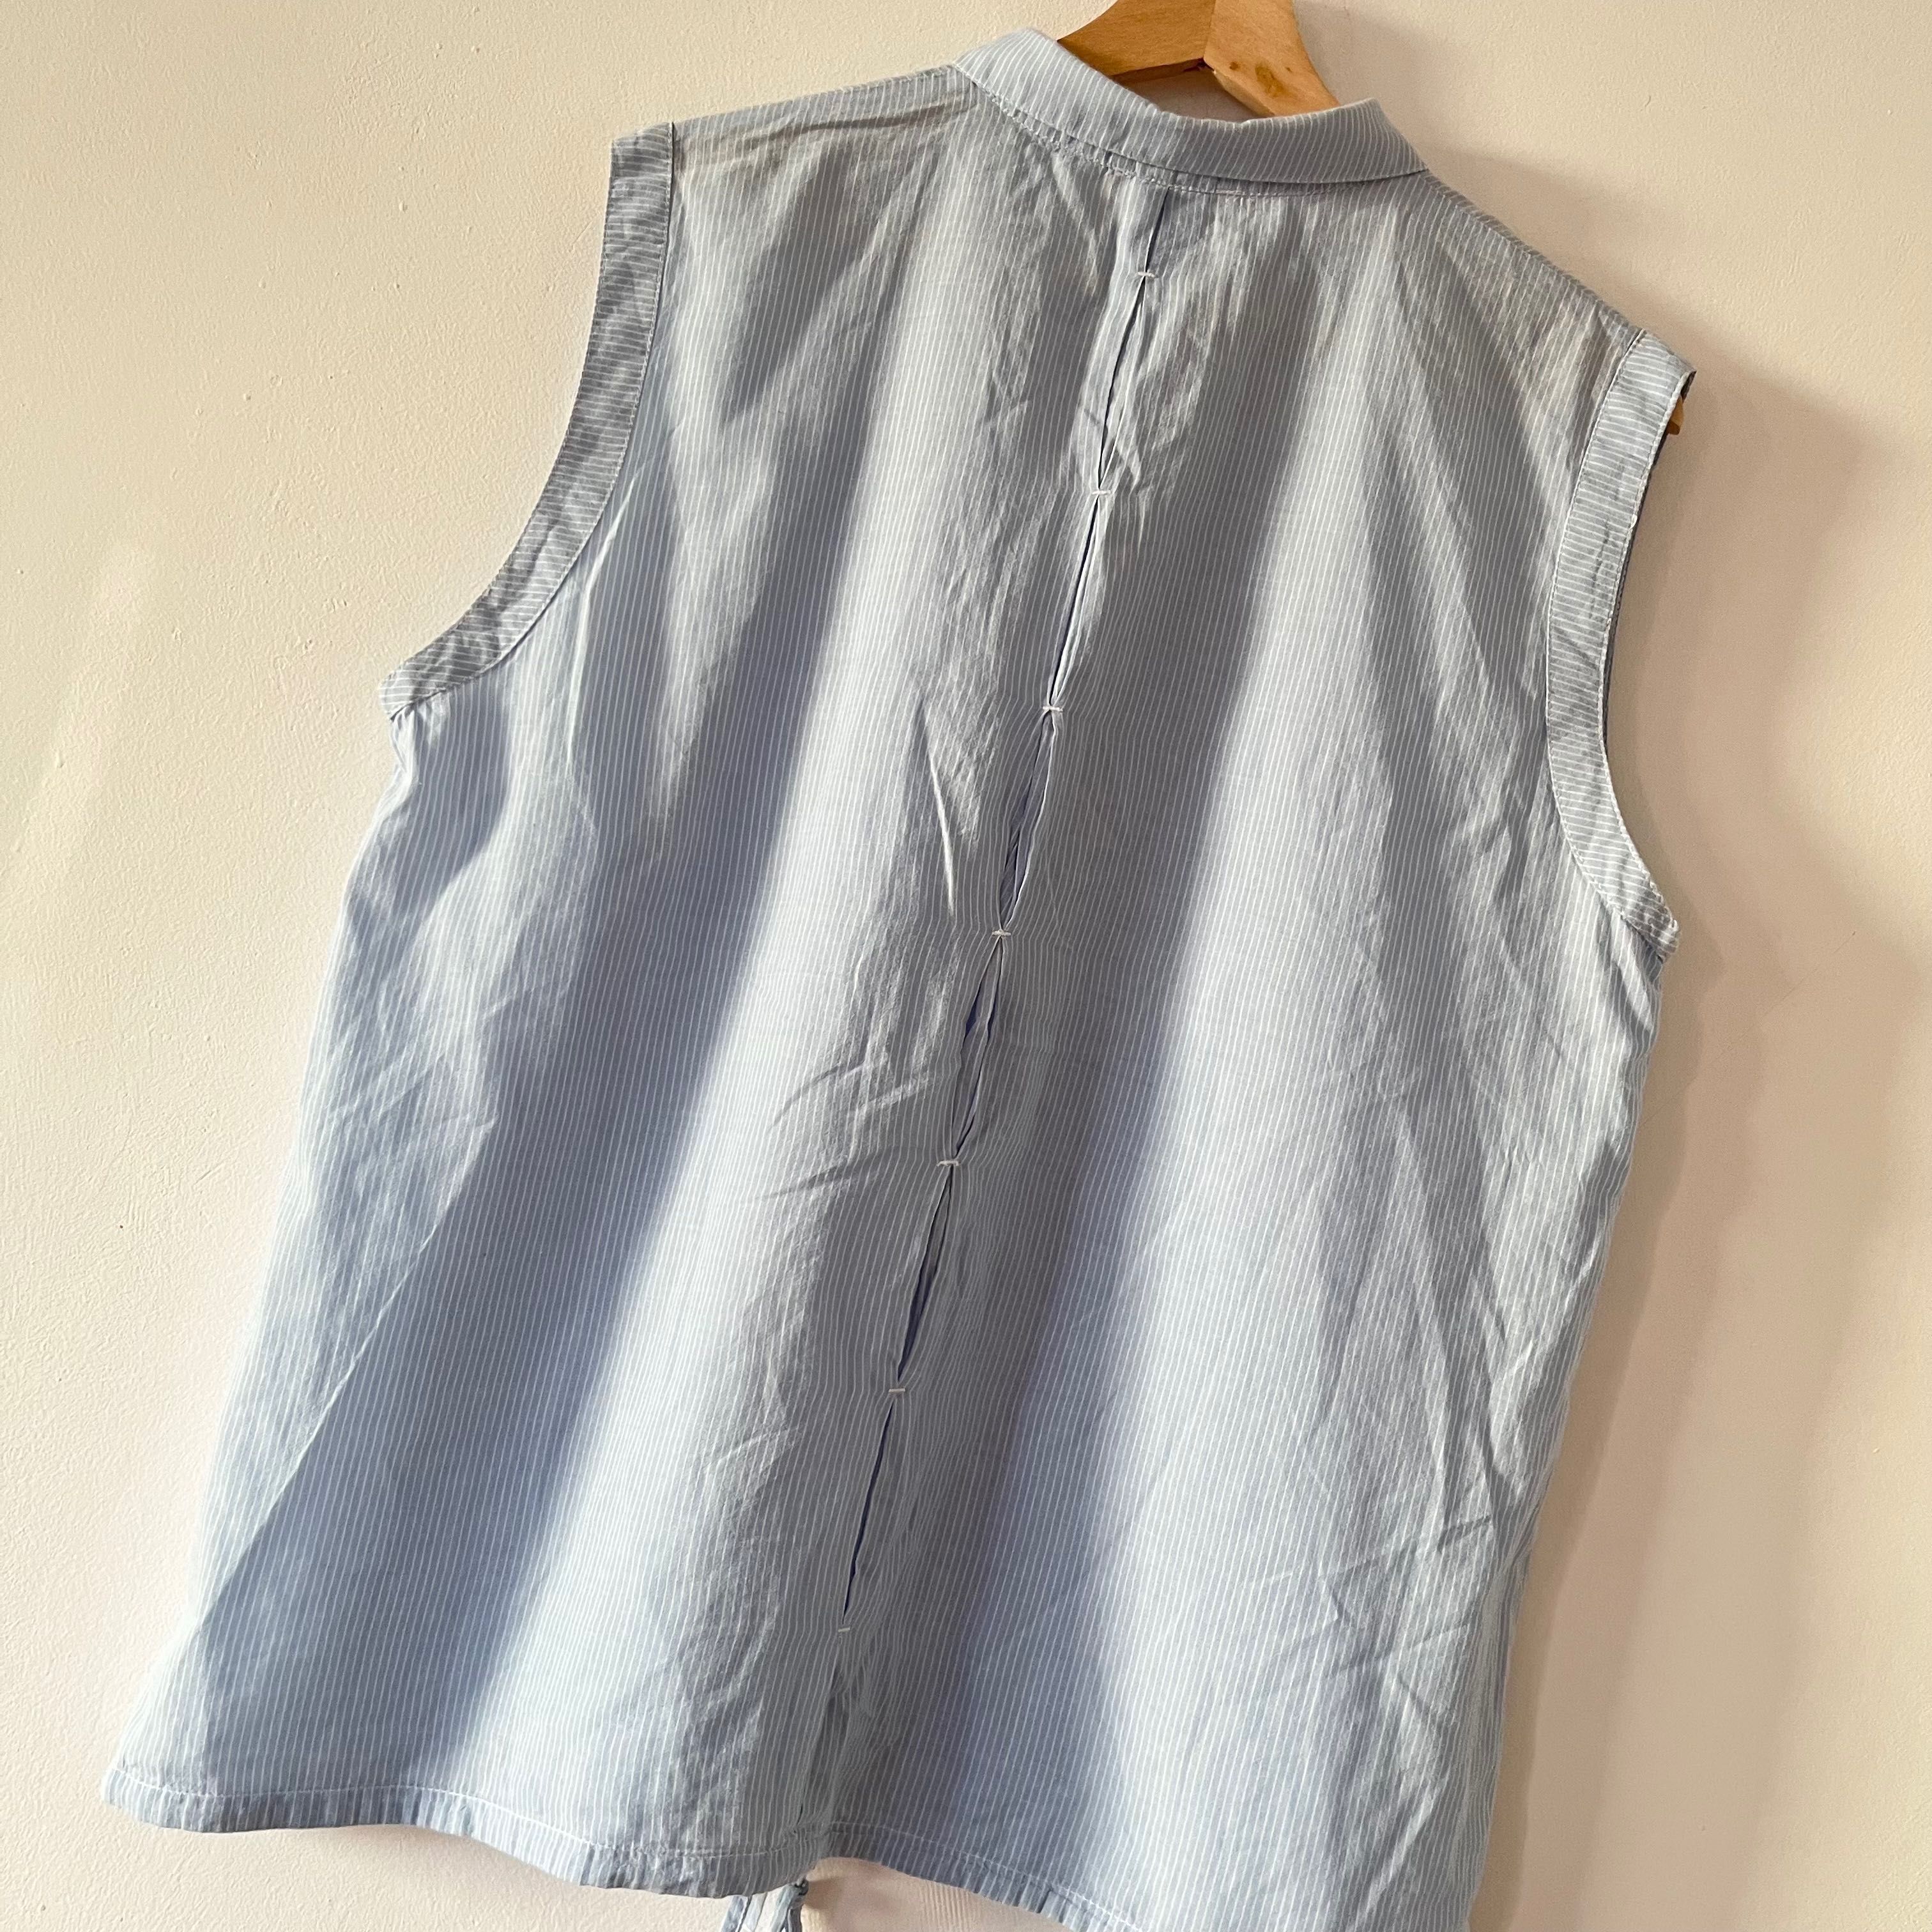 Bluzka Kappahl rozmiar XL w stylu koszulowym z zaszewkami